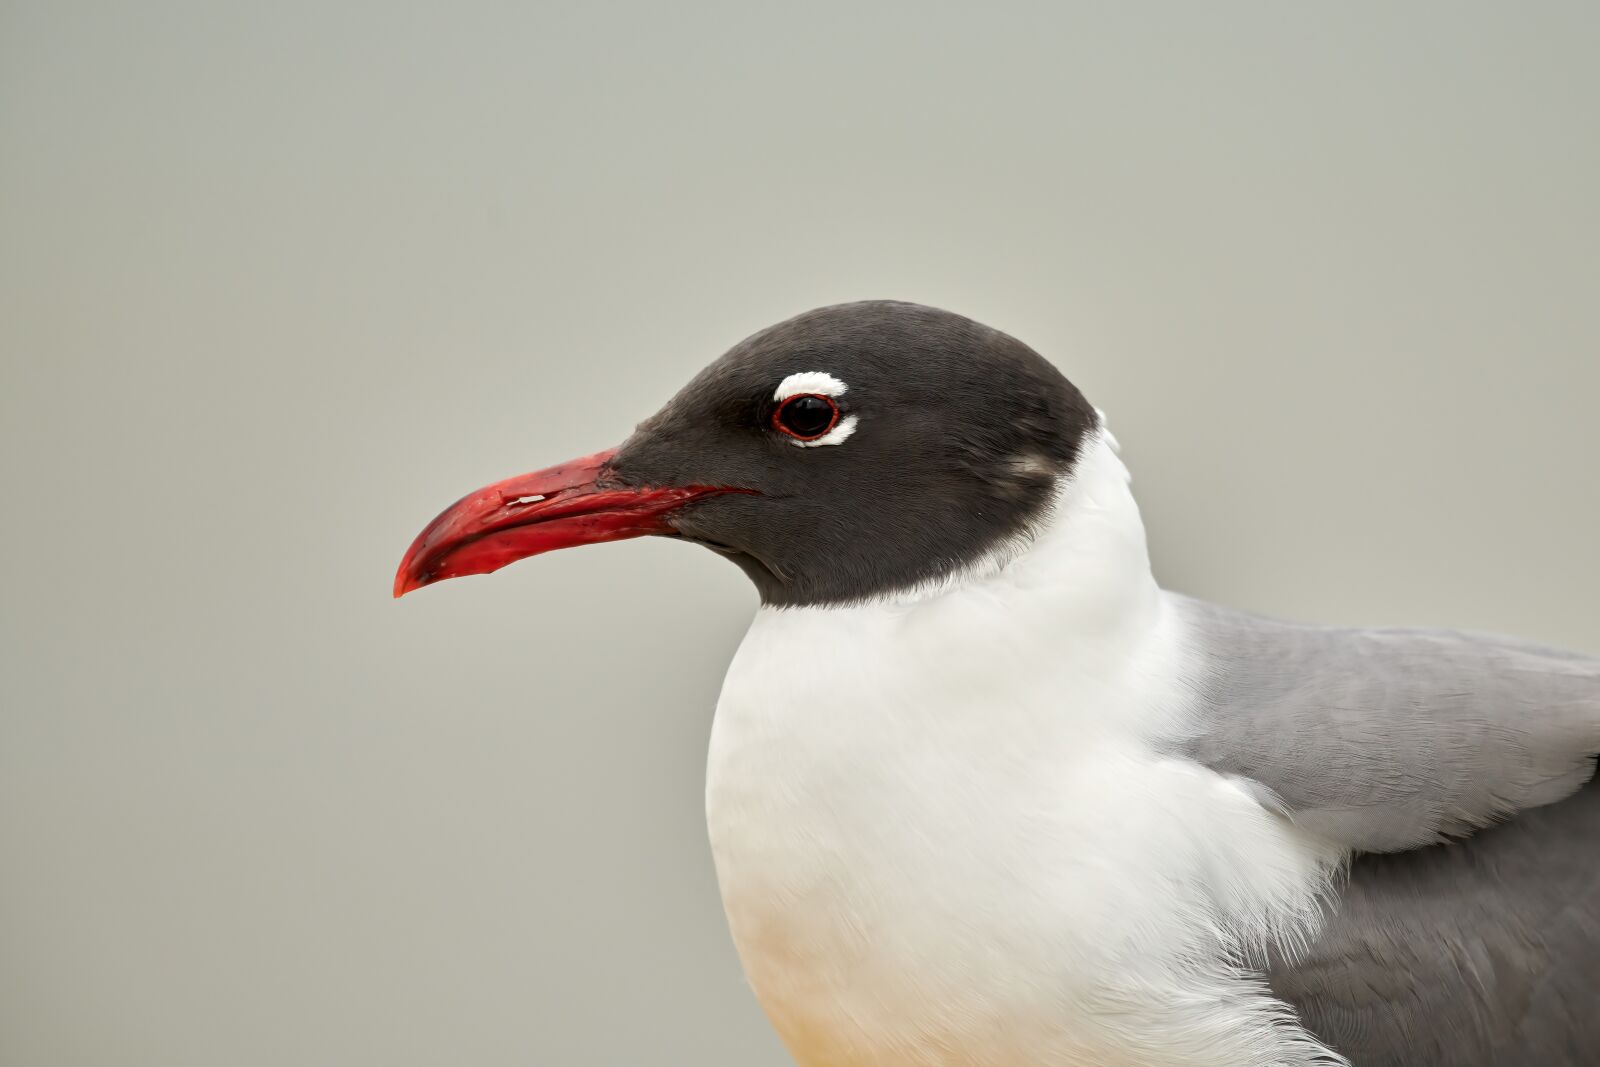 Nikon D850 sample photo. Gull, bird, seagull photography